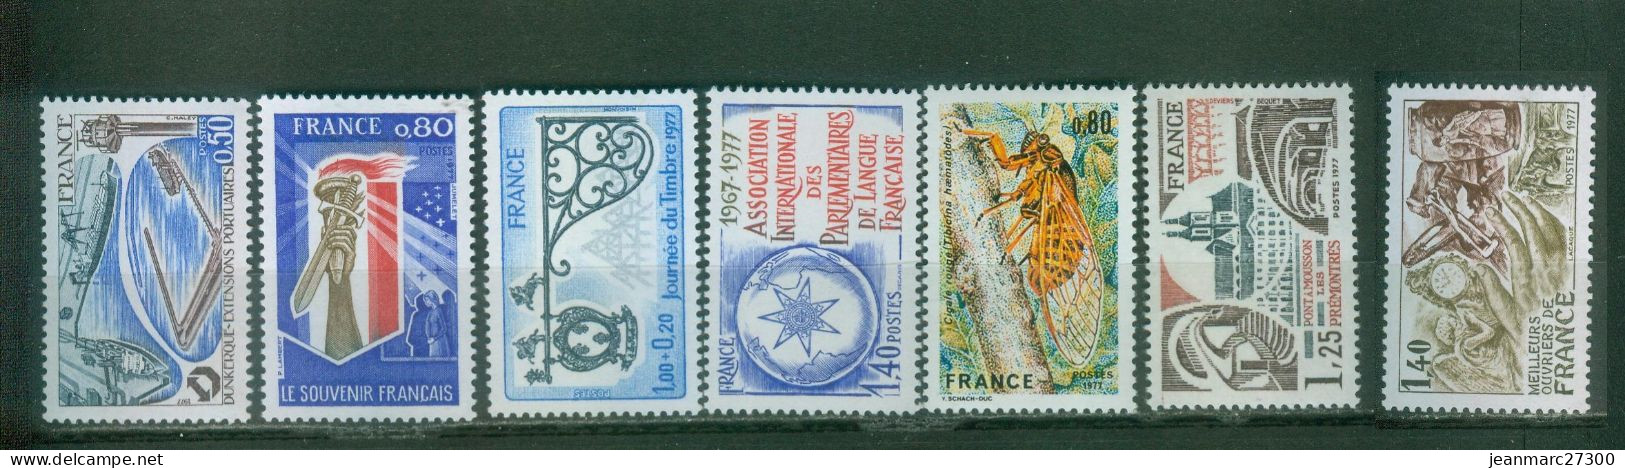 YT N° 1925 1926 1927 1945 1946 1947 1952  Neufs ** 1977 - Unused Stamps